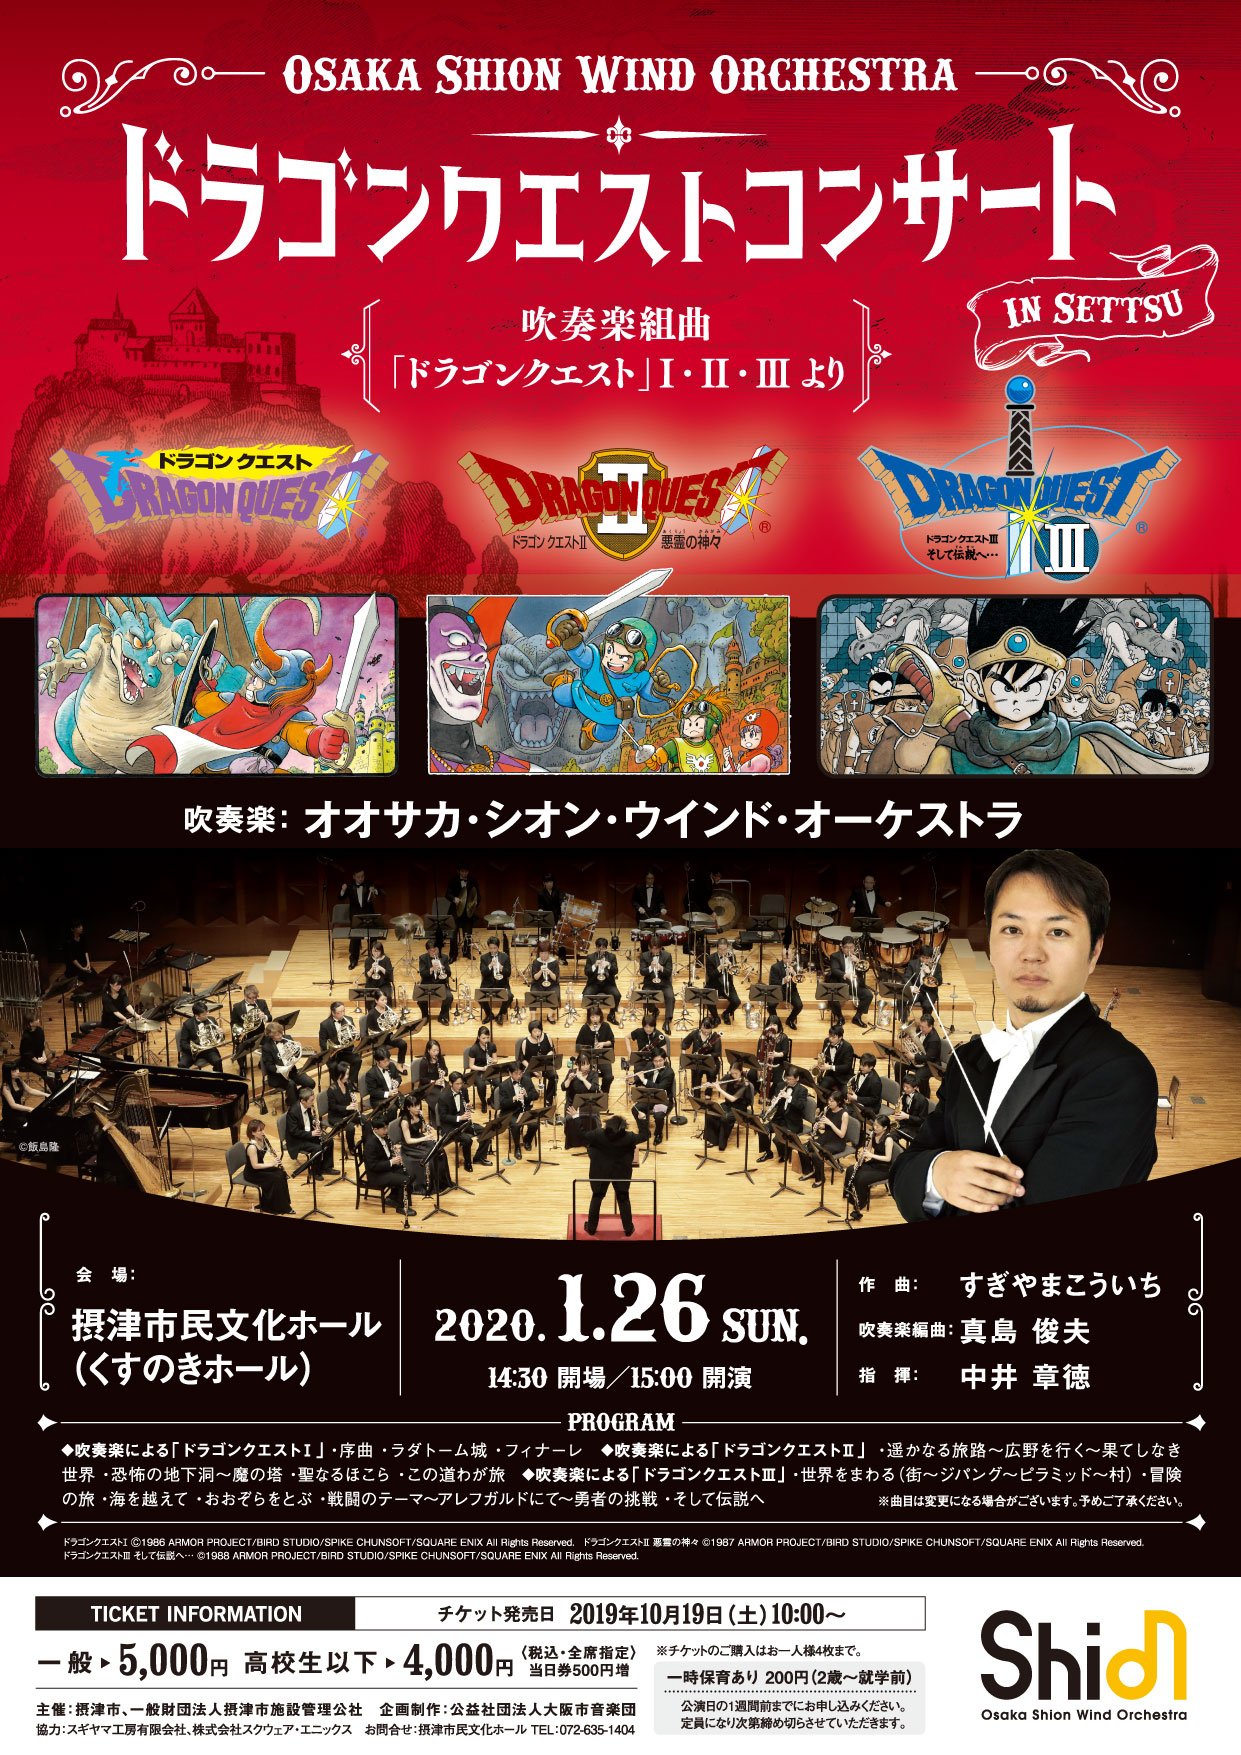 ドラゴンクエストコンサート In 摂津 コンサート情報 Osaka Shion Wind Orchestra 大阪市音楽団